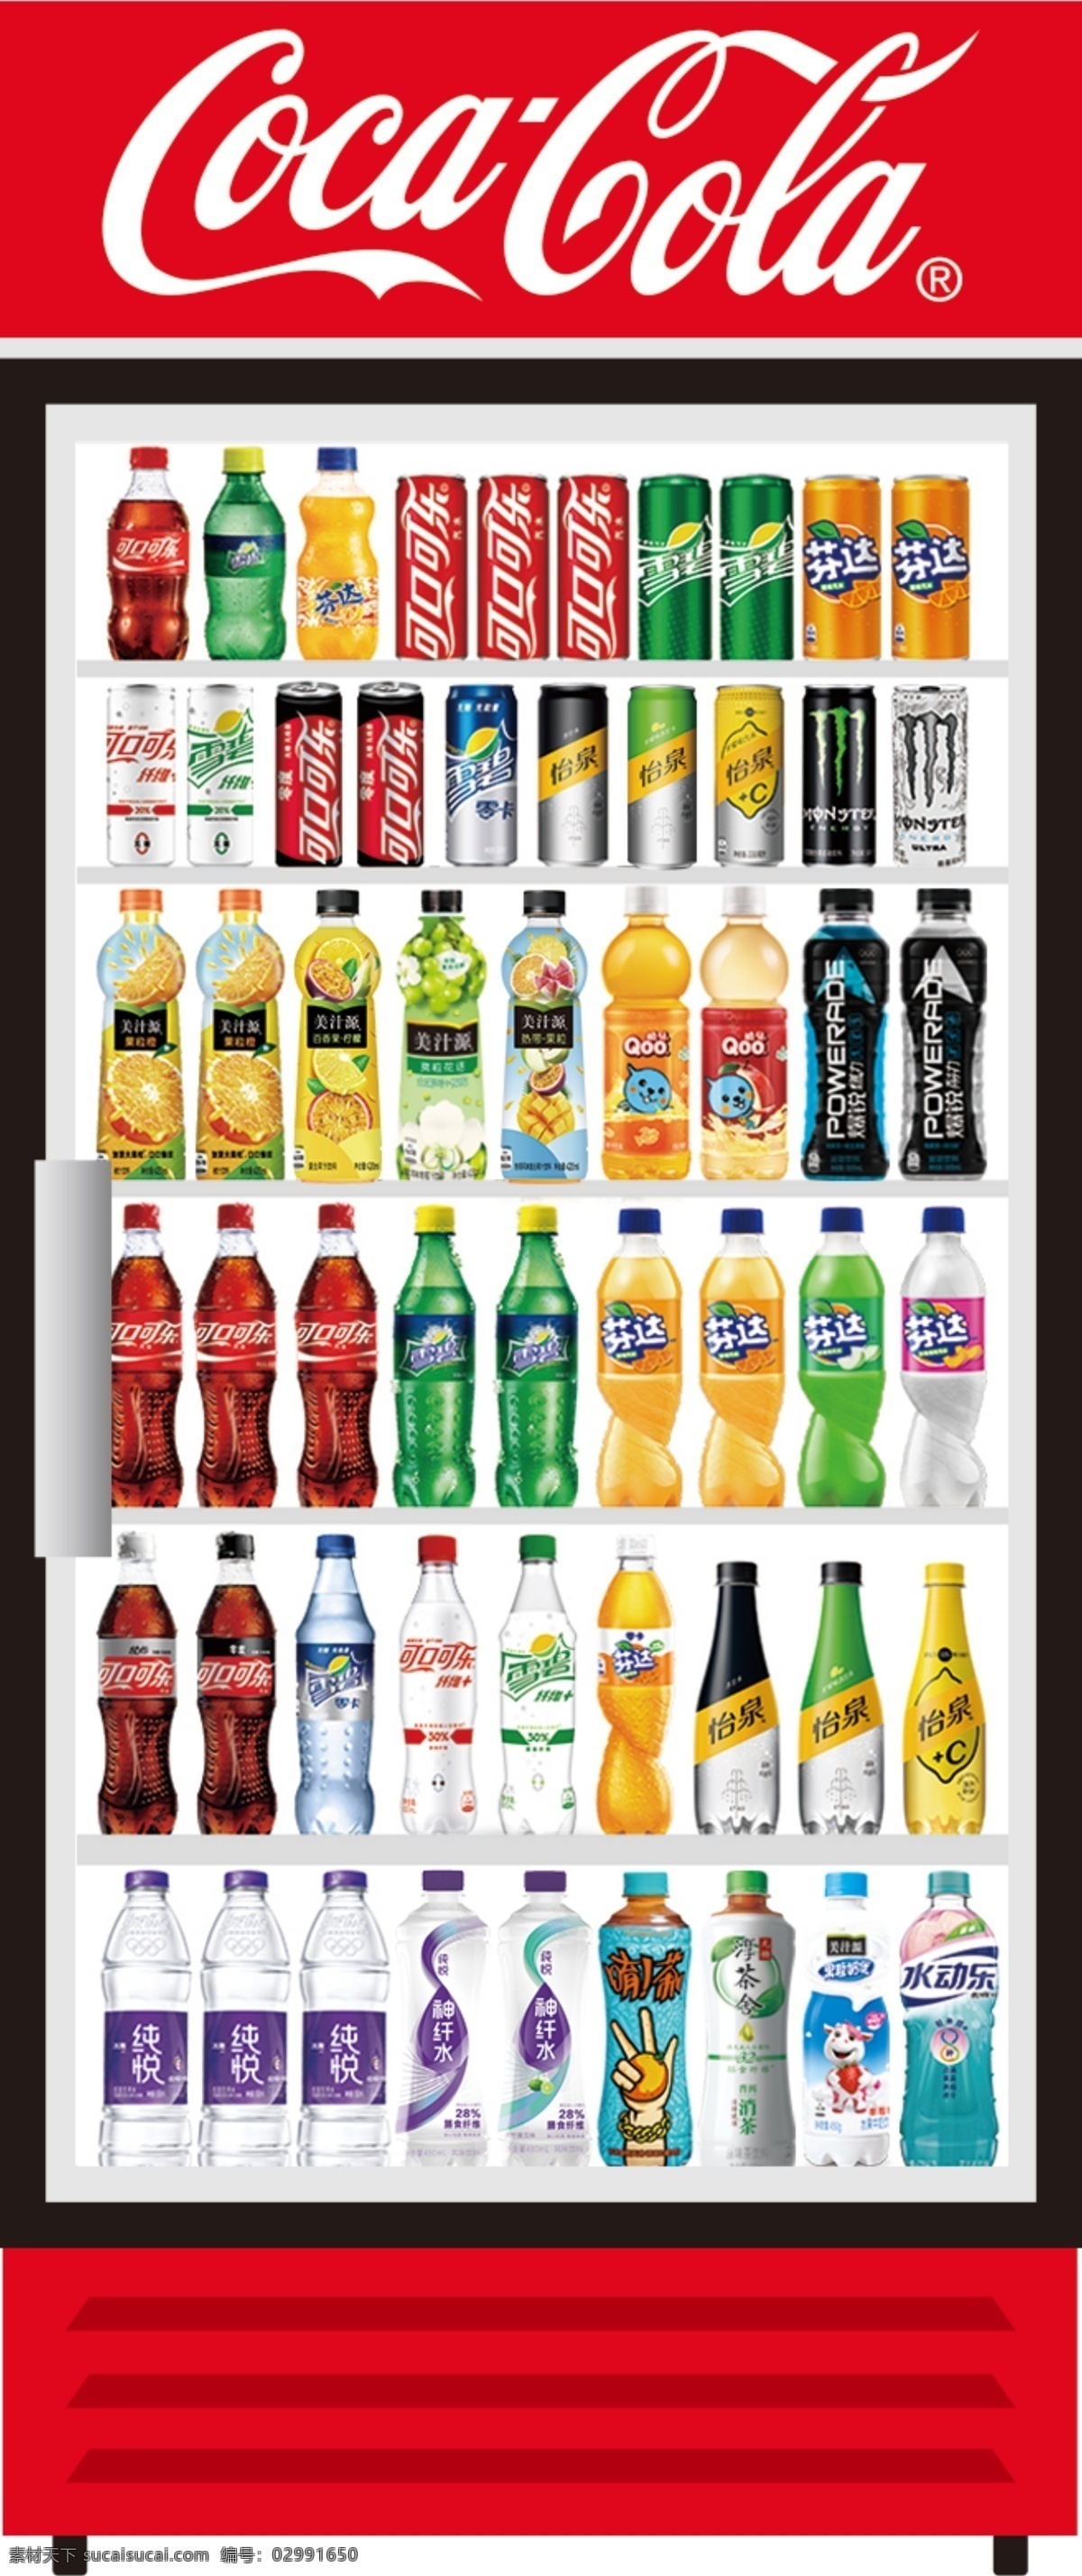 冰柜产品 可乐 产品 怡泉 系列 美汁源 包装设计